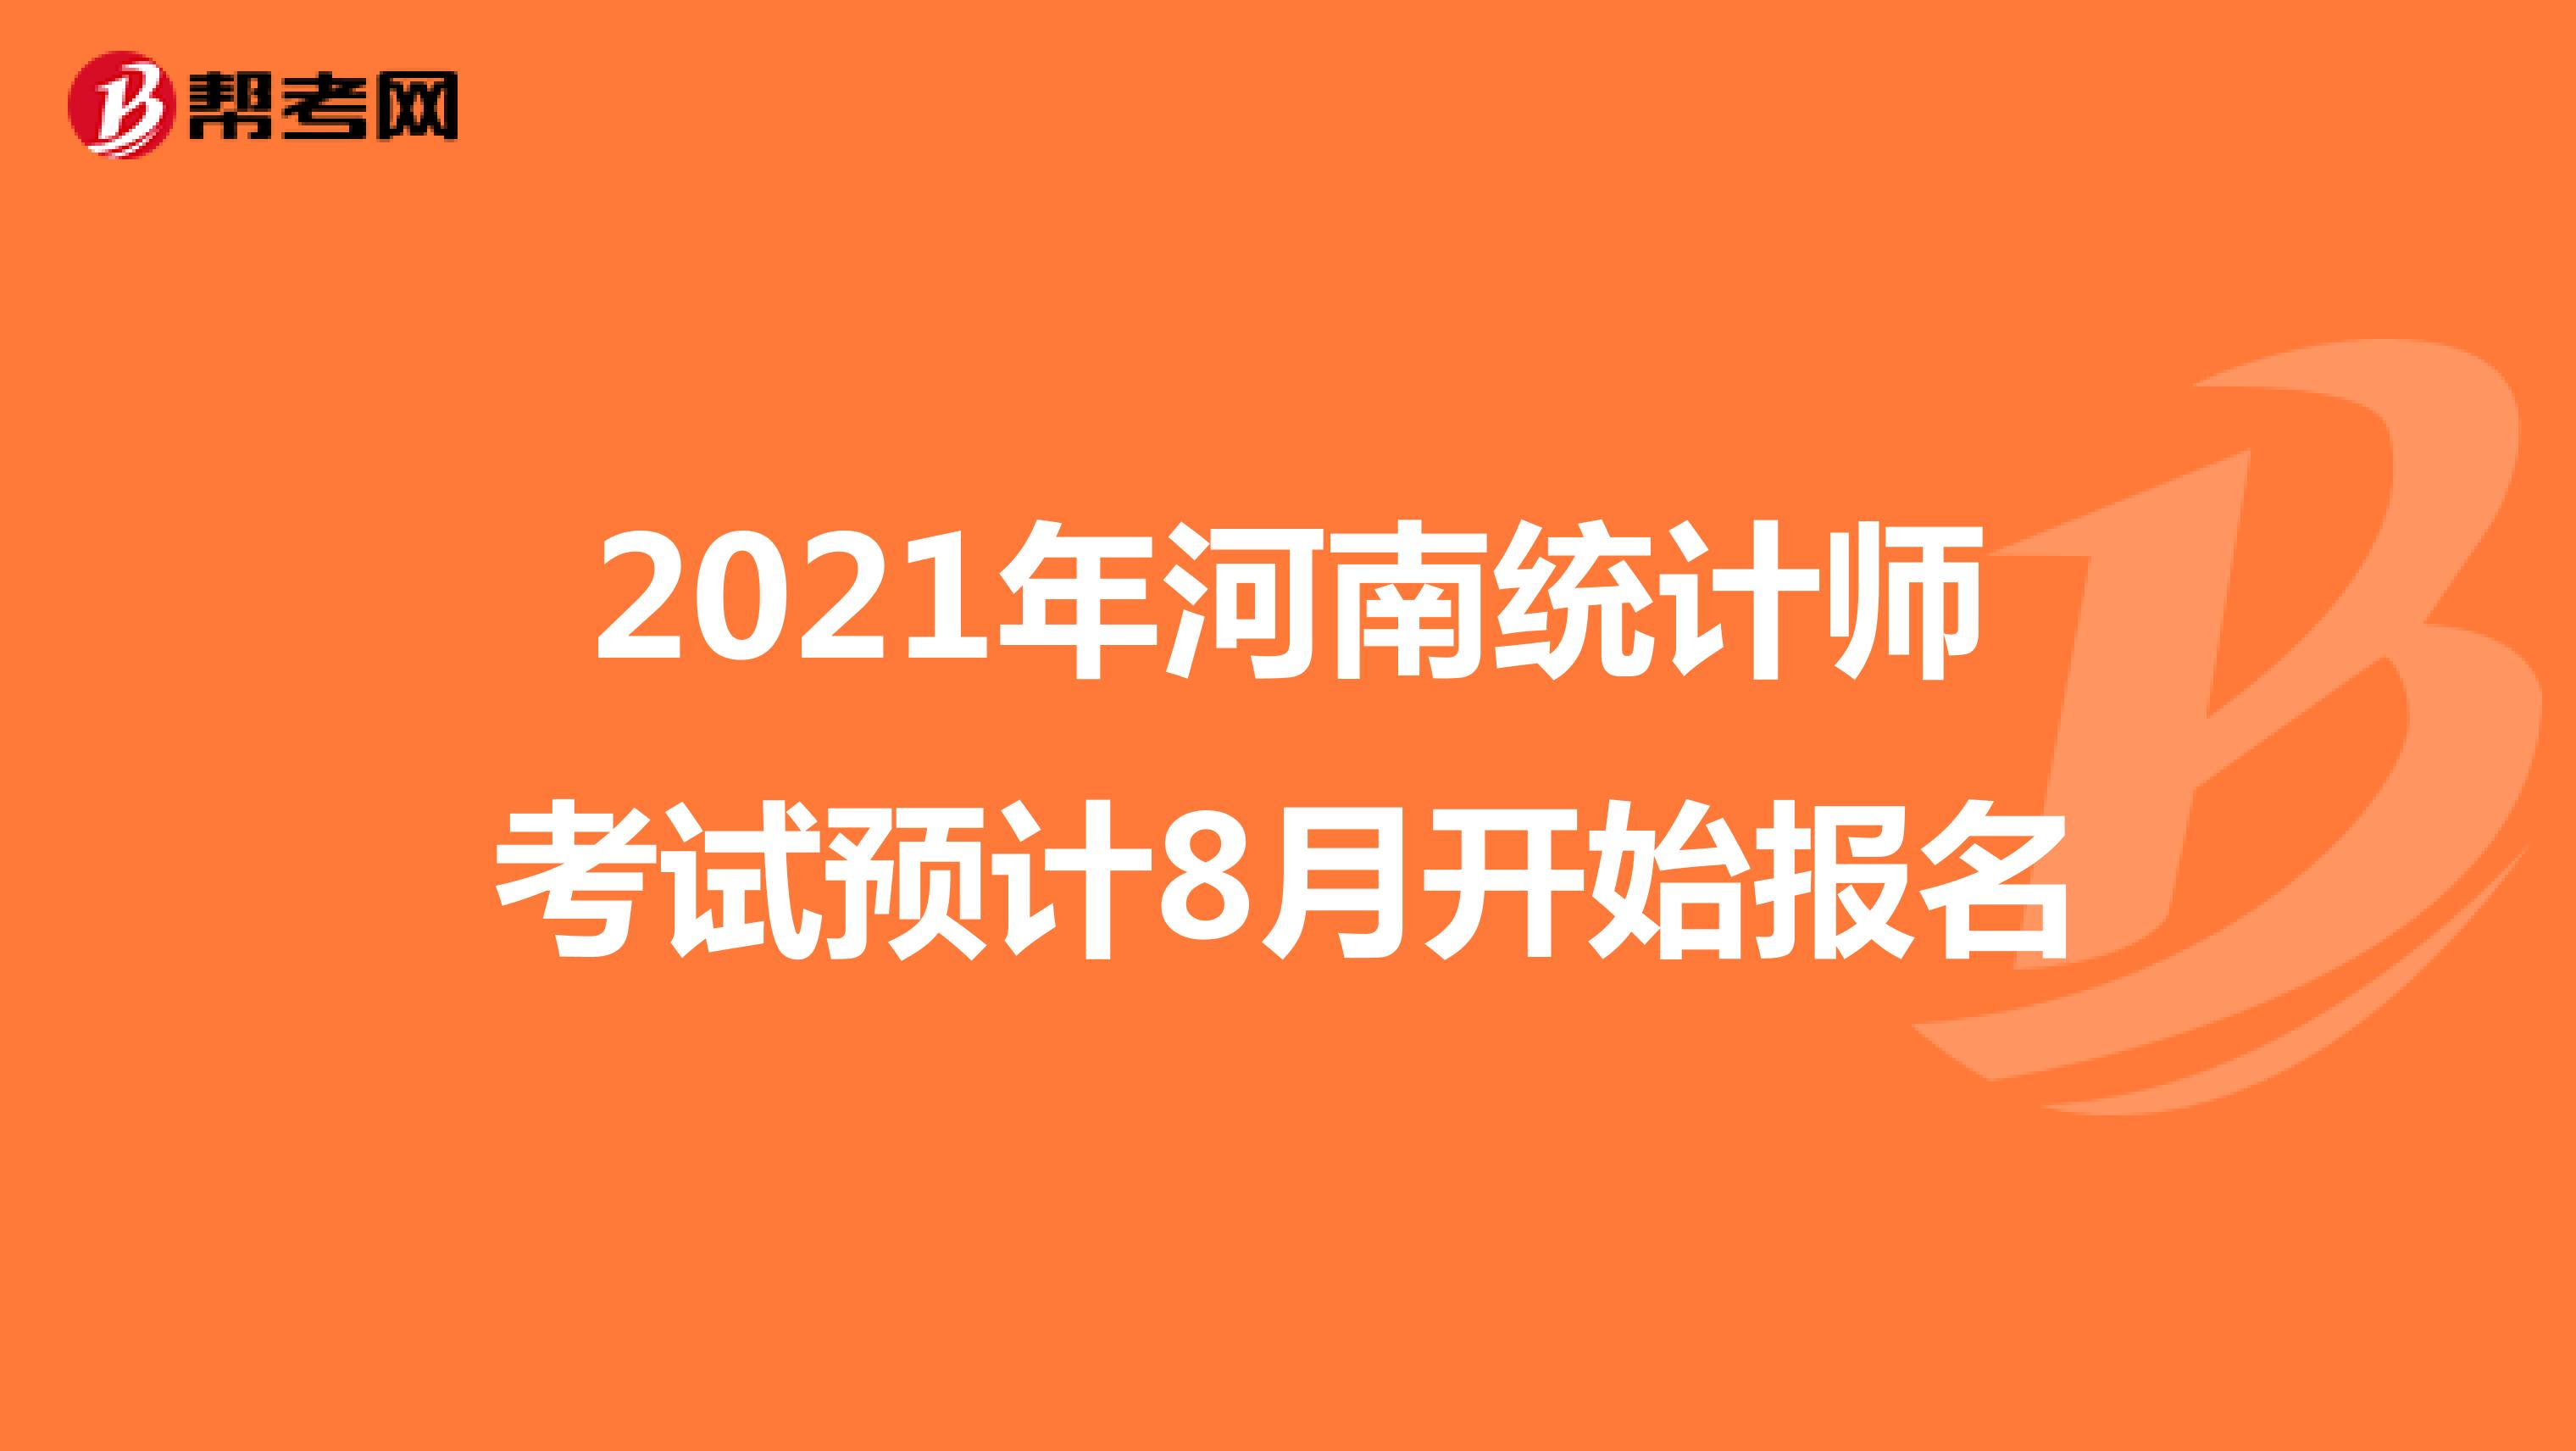 2021年河南统计师考试预计8月开始报名